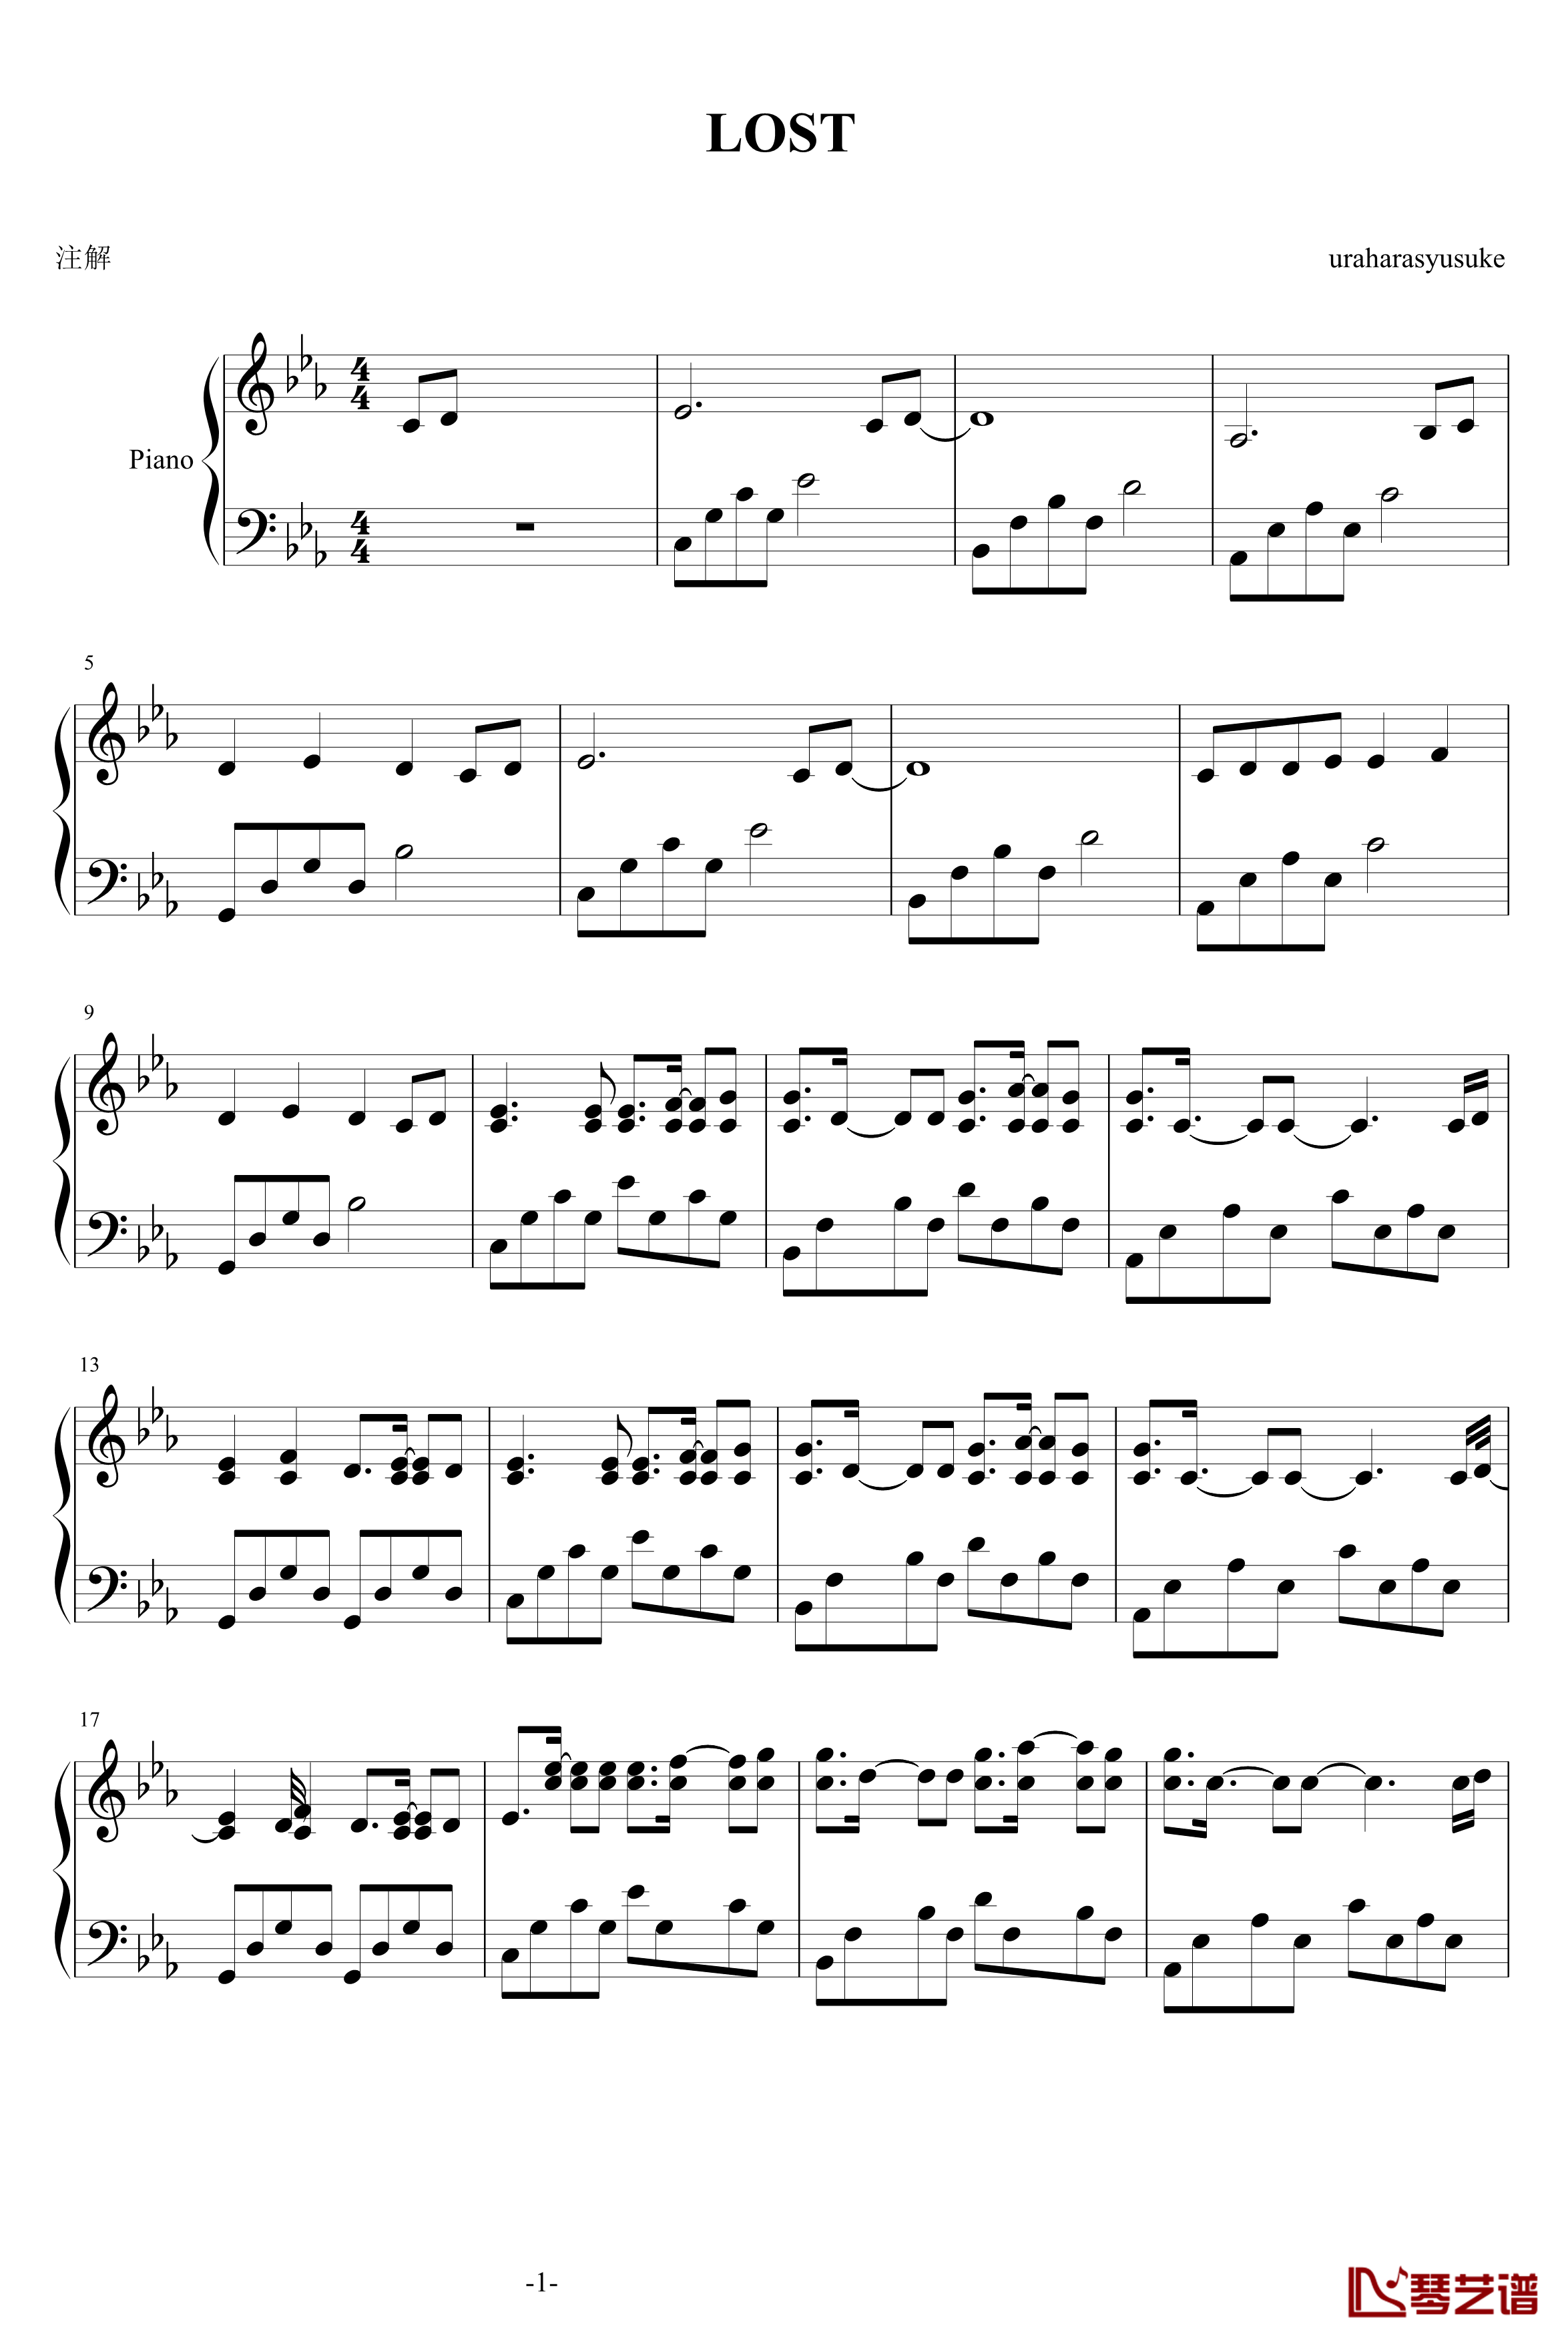 LOST钢琴谱-uraharasyusuke1